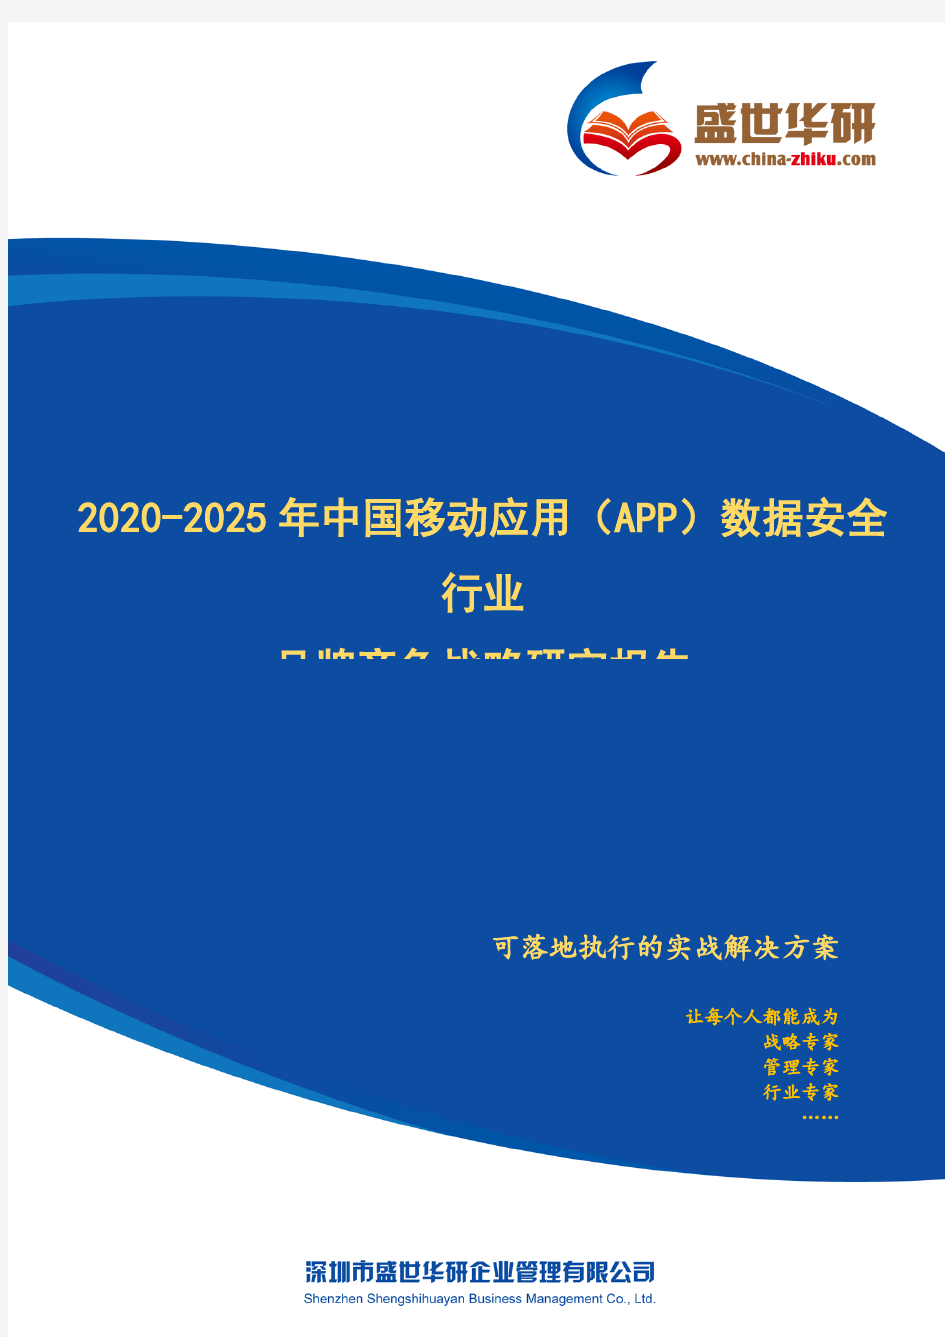 【完整版】2020-2025年中国移动应用(App)数据安全行业品牌竞争策略研究报告